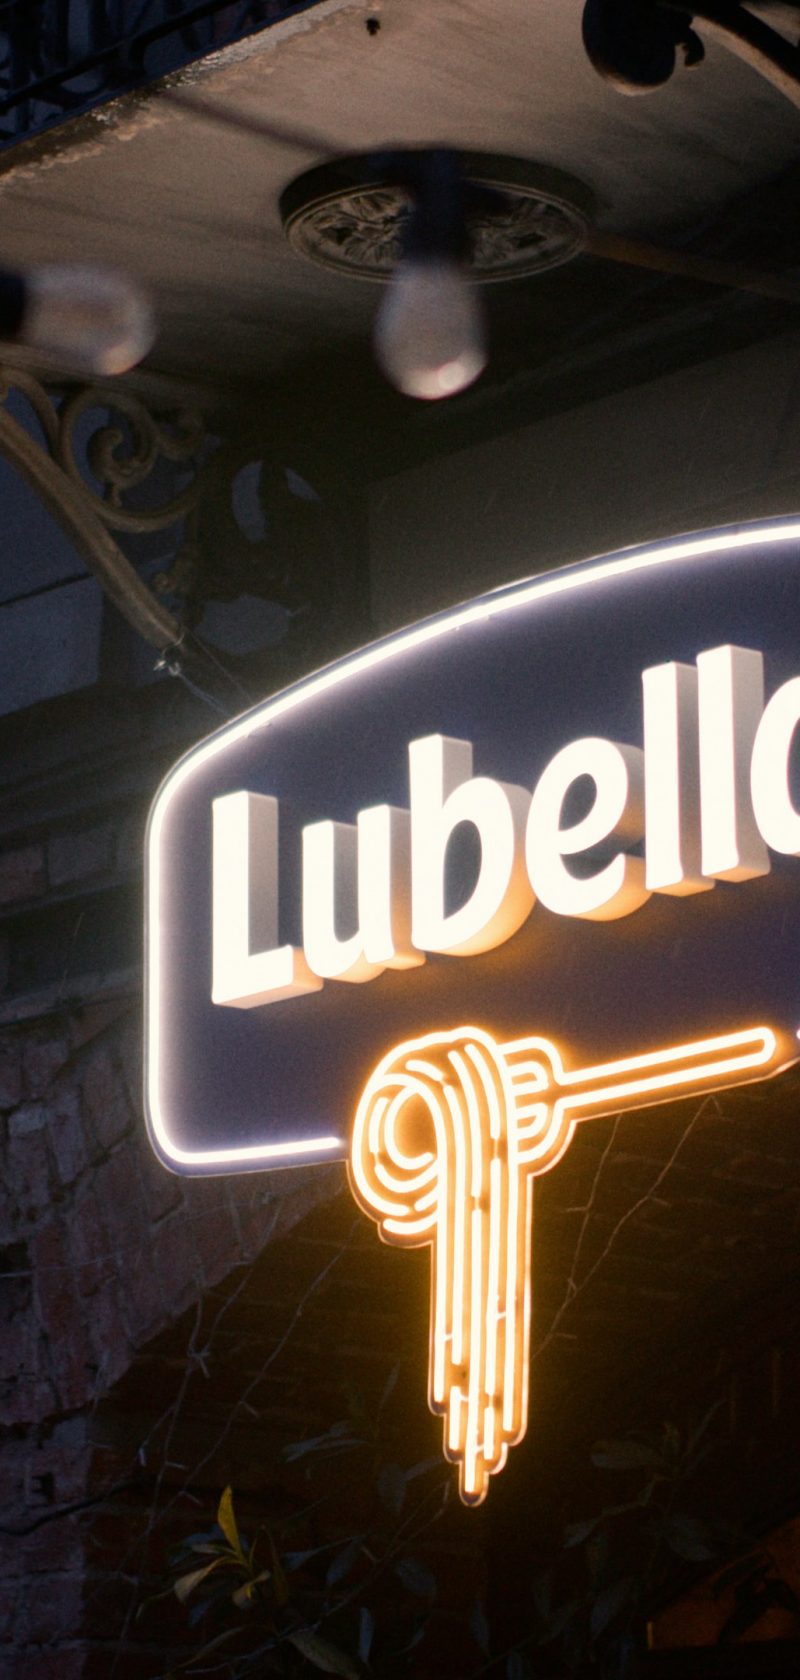 Lubella - event